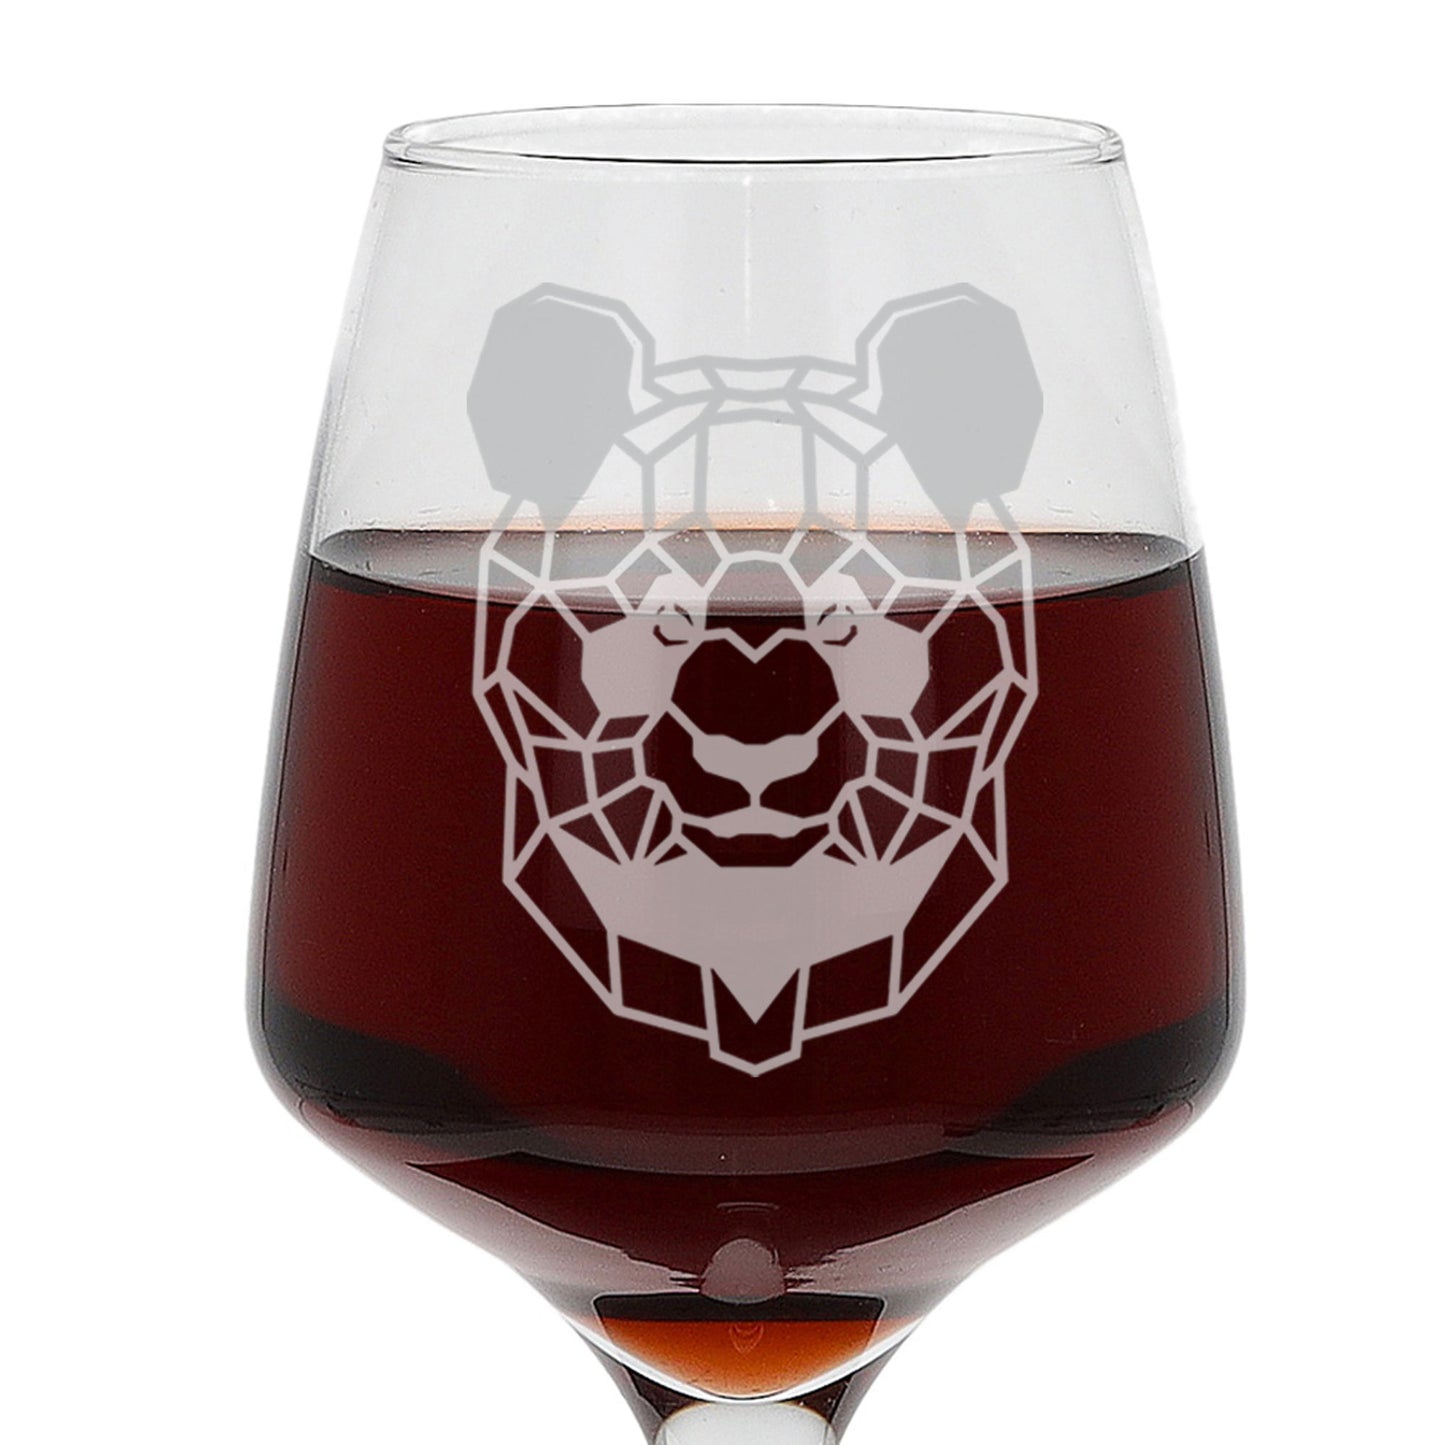 Panda Engraved Wine Glass  - Always Looking Good -   